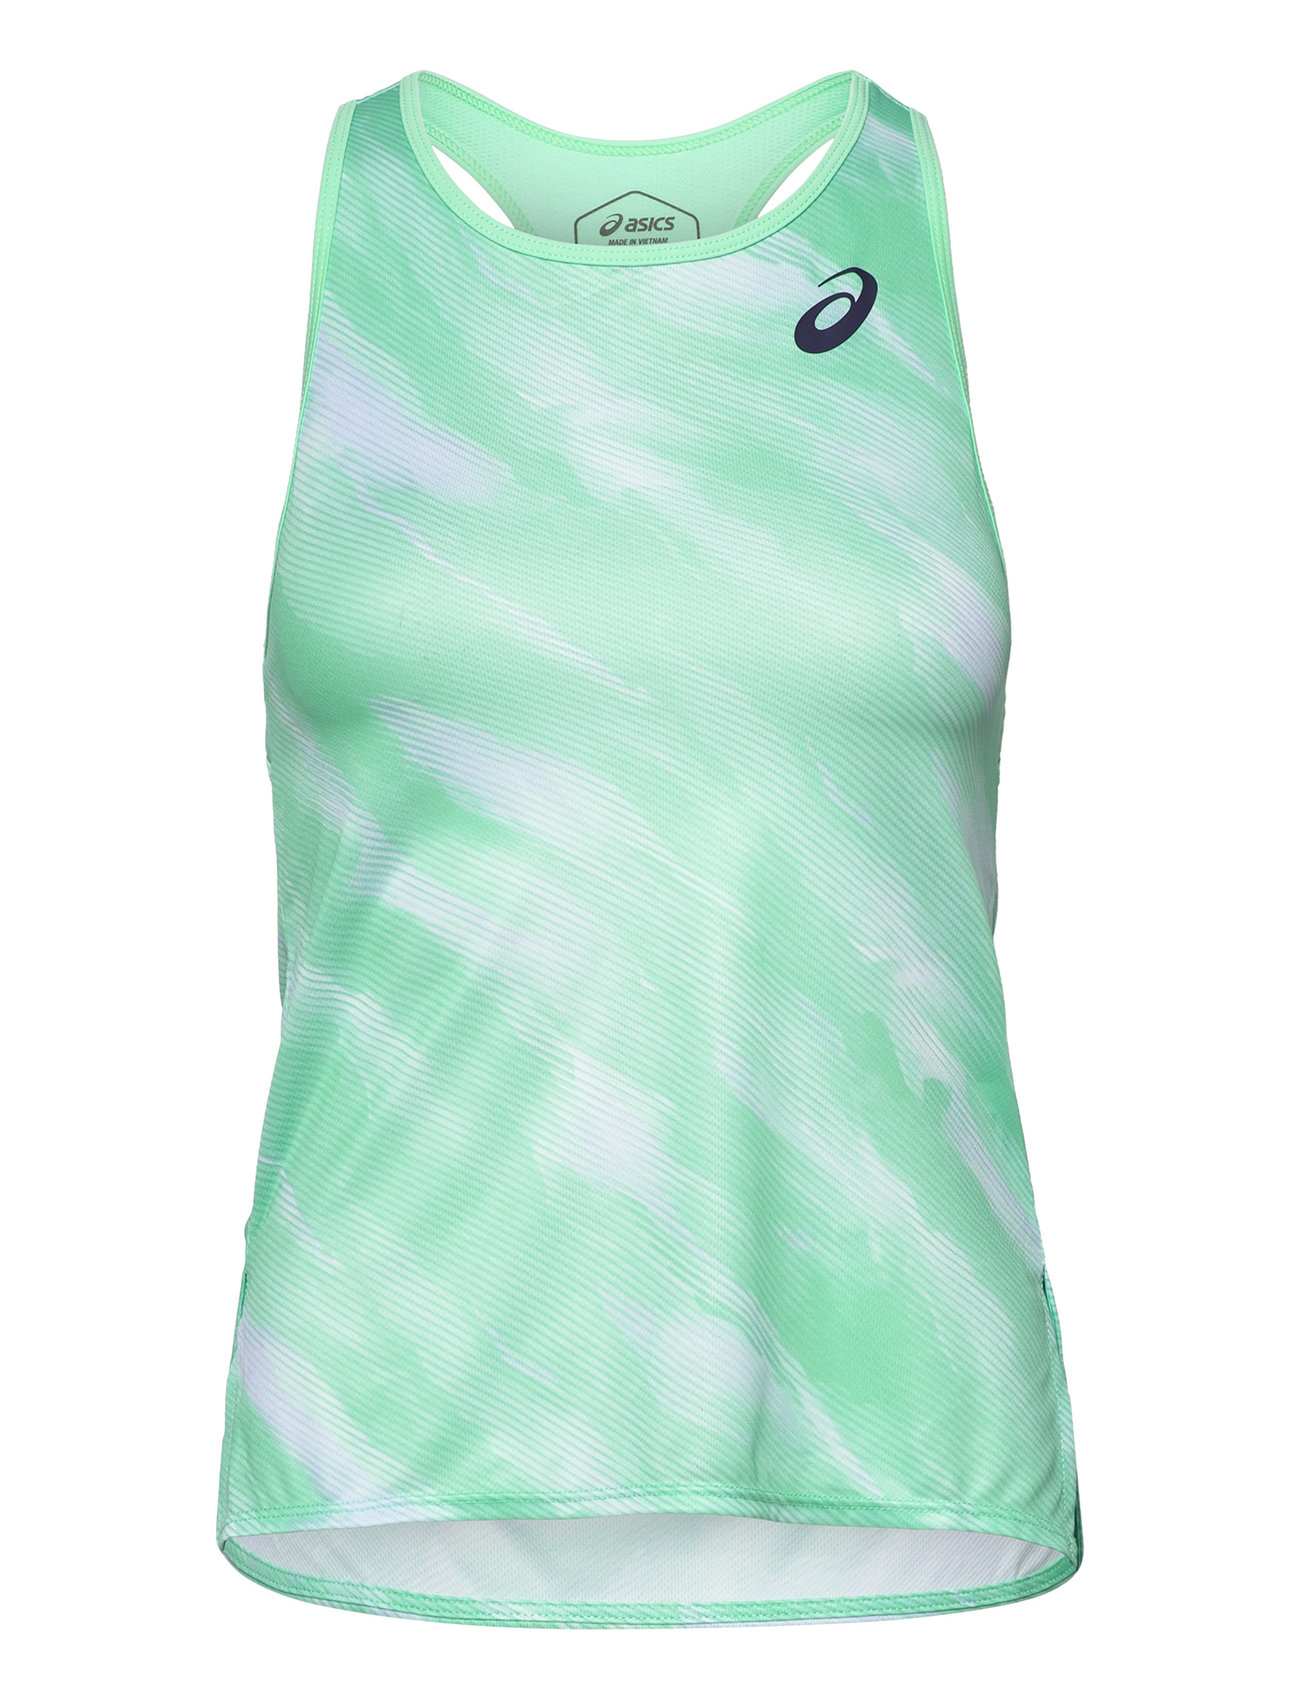 Women Match Graphic Tank Sport T-shirts & Tops Sleeveless Green Asics